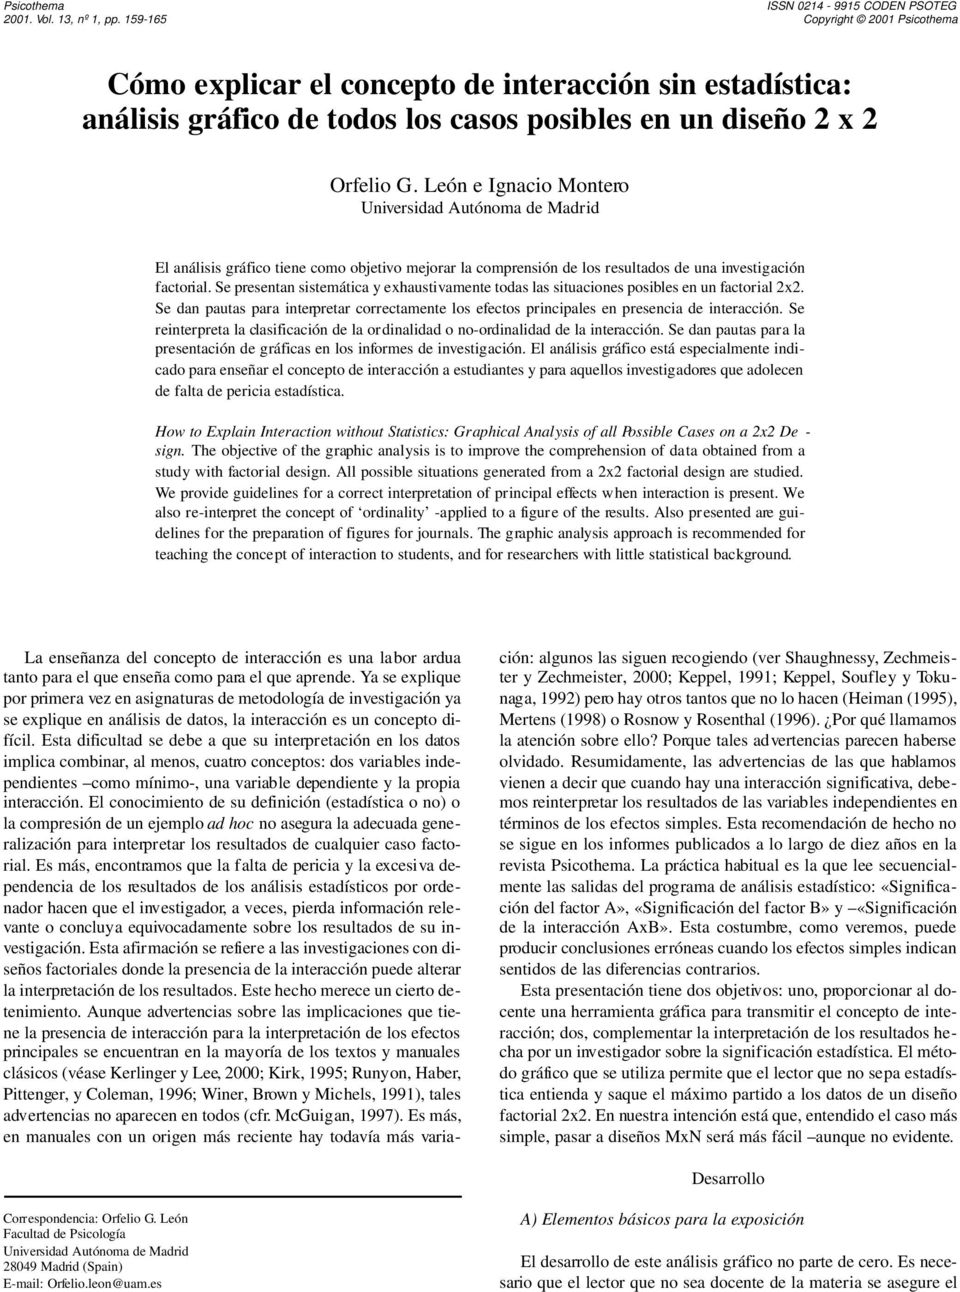 León e Ignacio Montero Universidad Autónoma de Madrid El análisis gráfico tiene como objetivo mejorar la comprensión de los resultados de una investigación factorial.